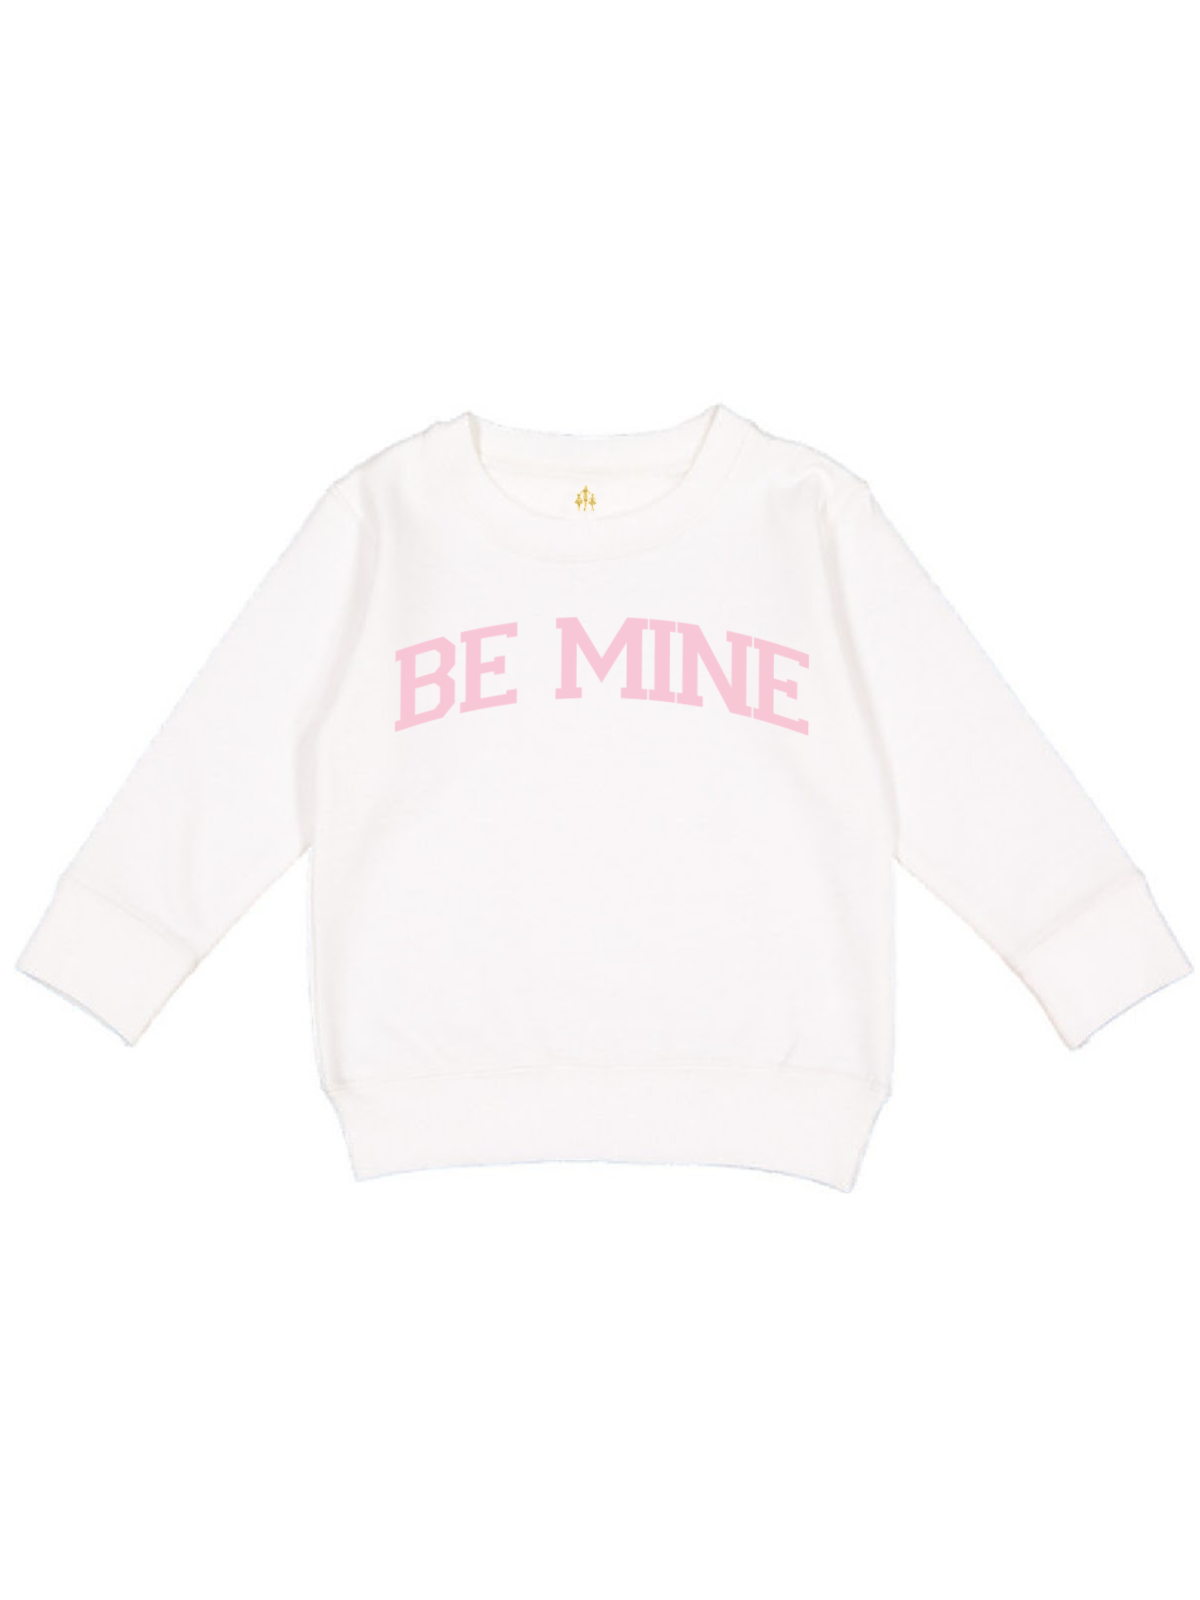 Be Mine Black Kids Valentine's Day Sweatshirt